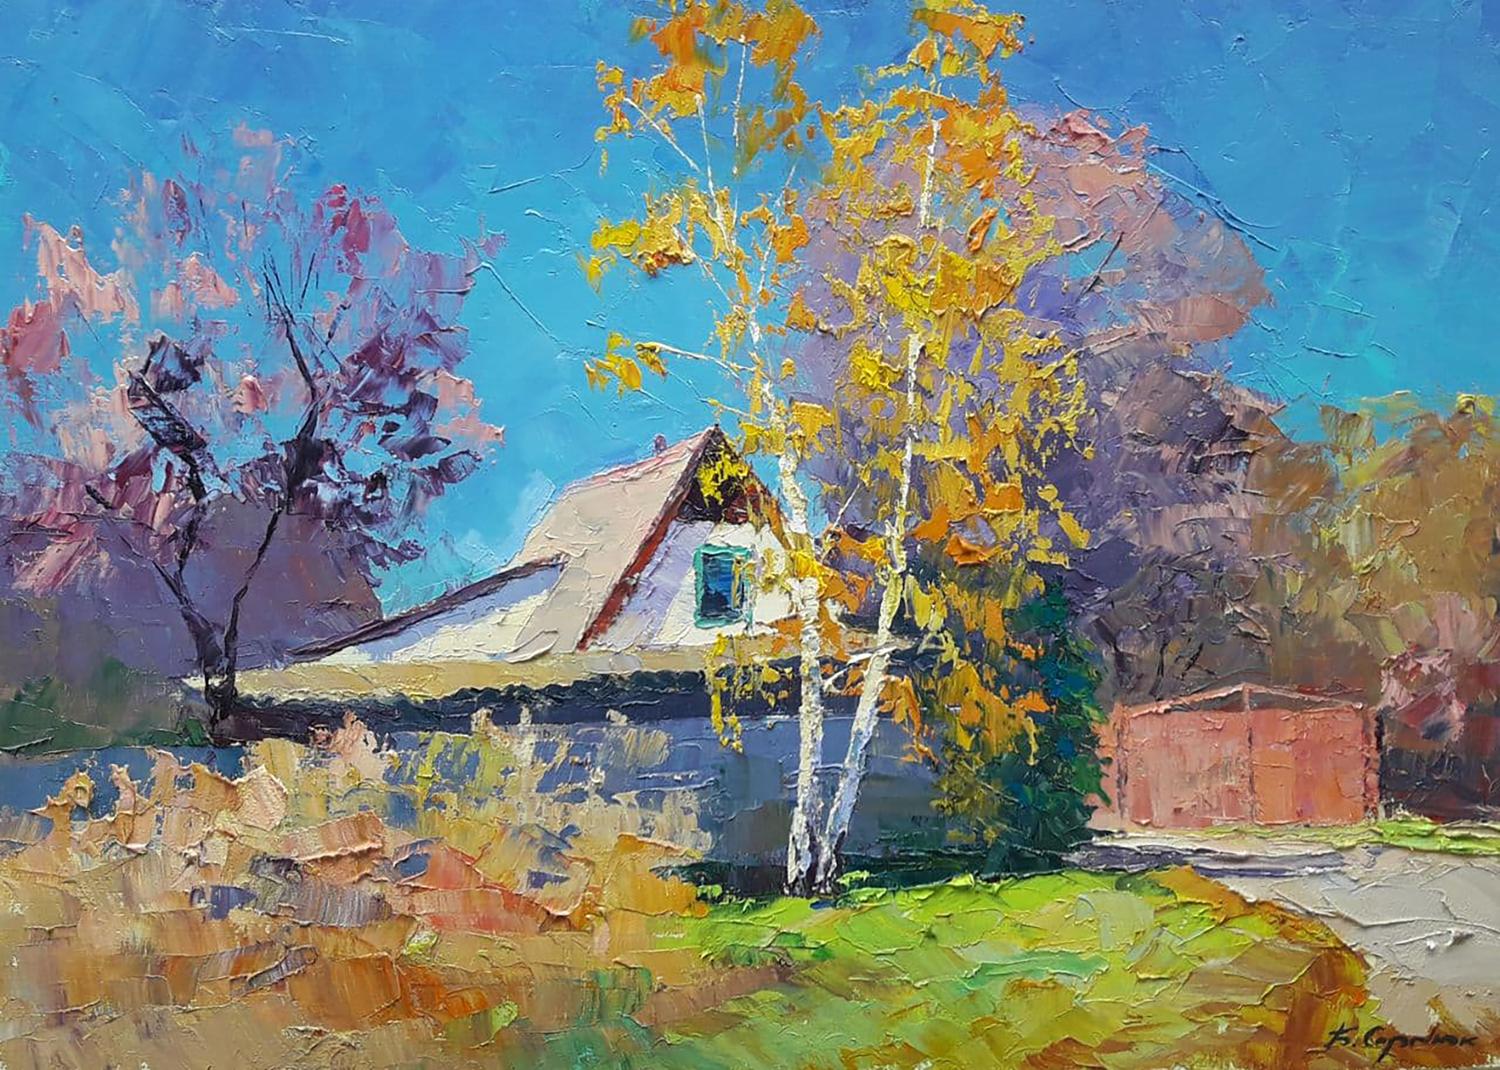 Oil painting October day Serdyuk Boris Petrovich